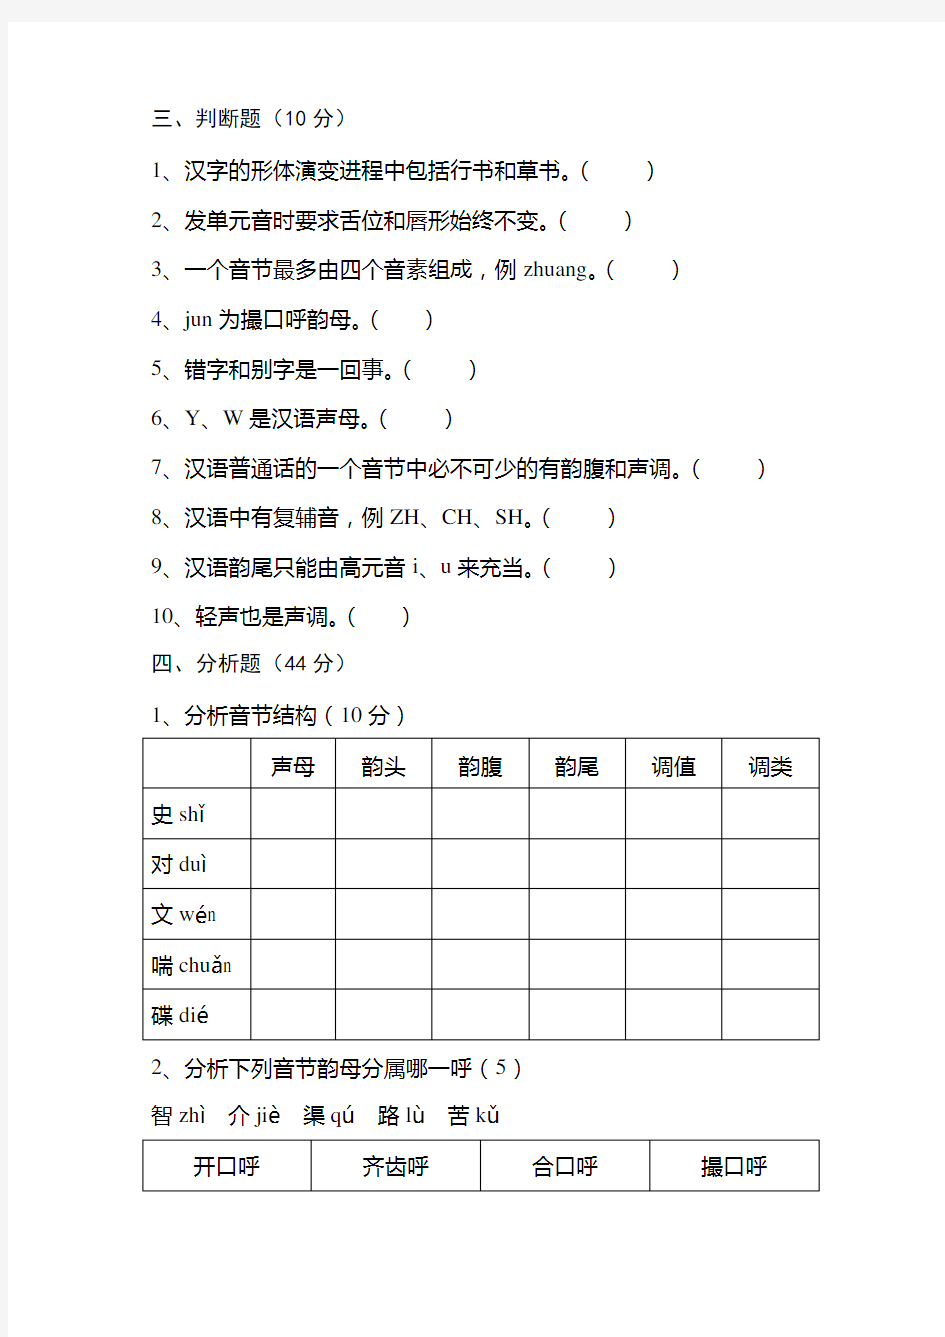 《现代汉语》(语音及文字部分)试卷A含答案